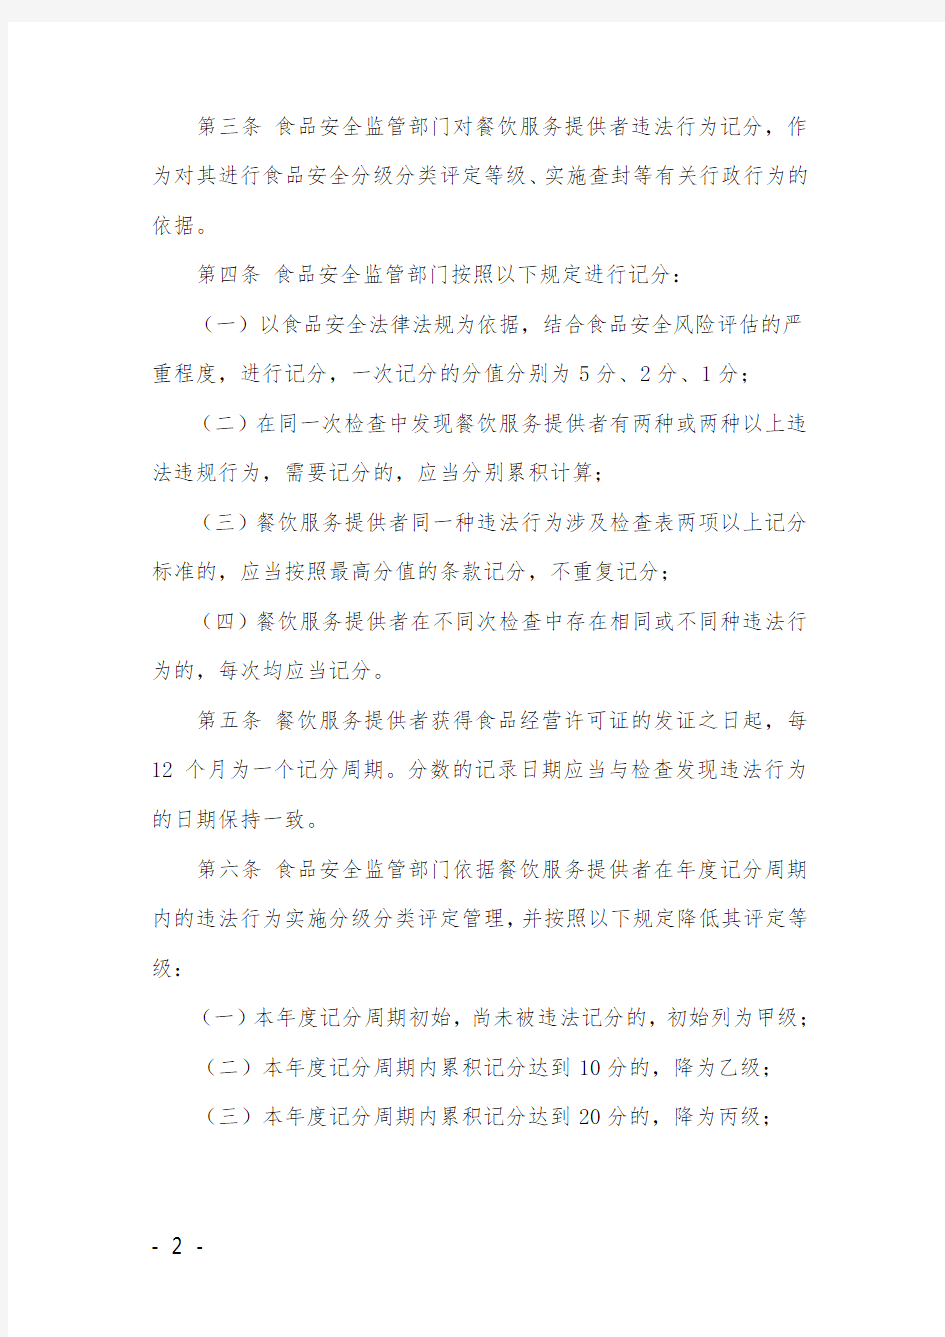 《深圳市餐饮服务违法行为记分管理办法(试行)》